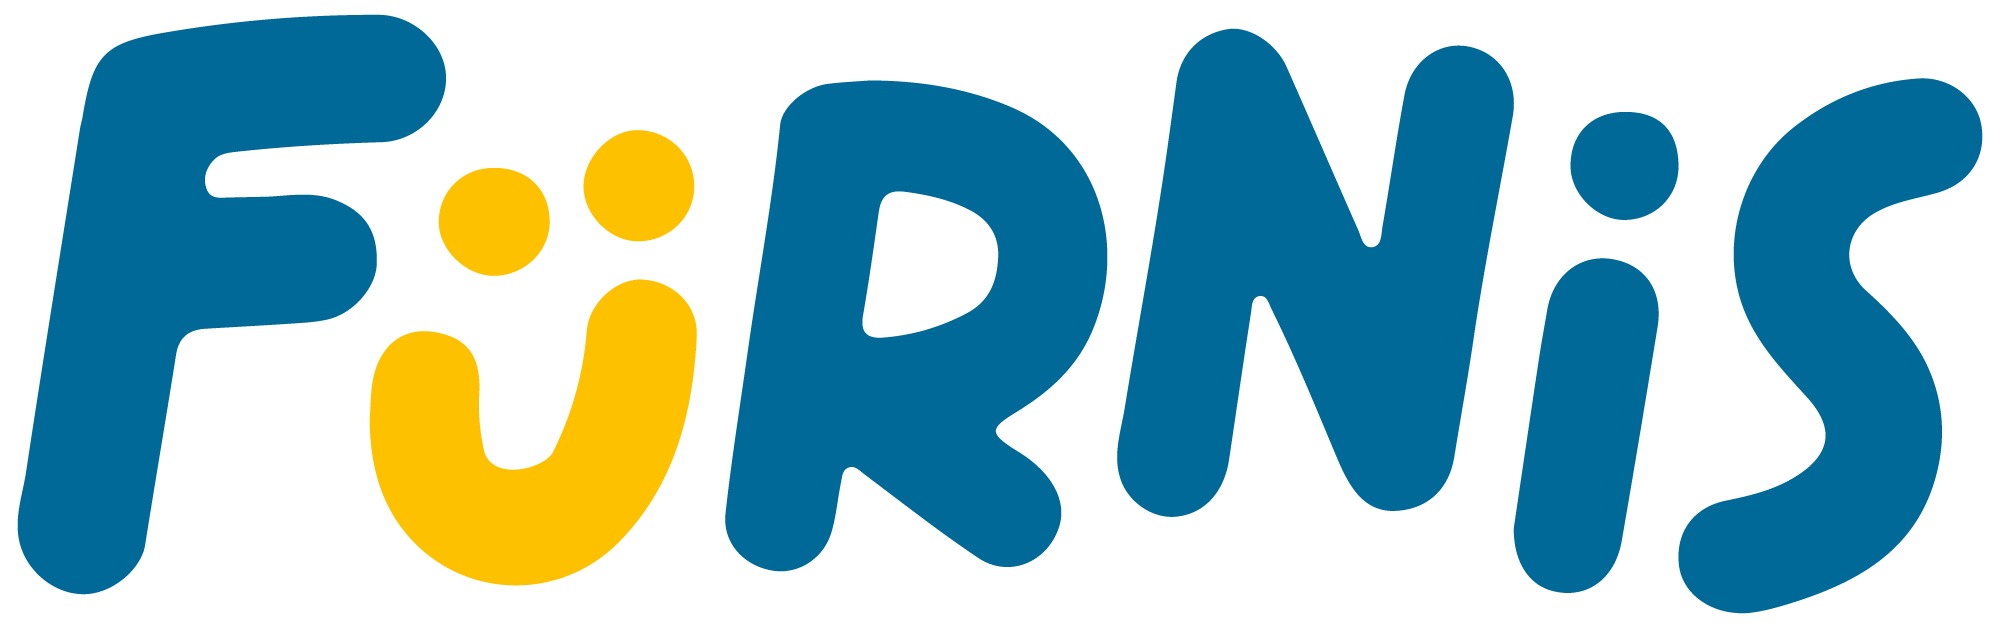 Furnis Logo